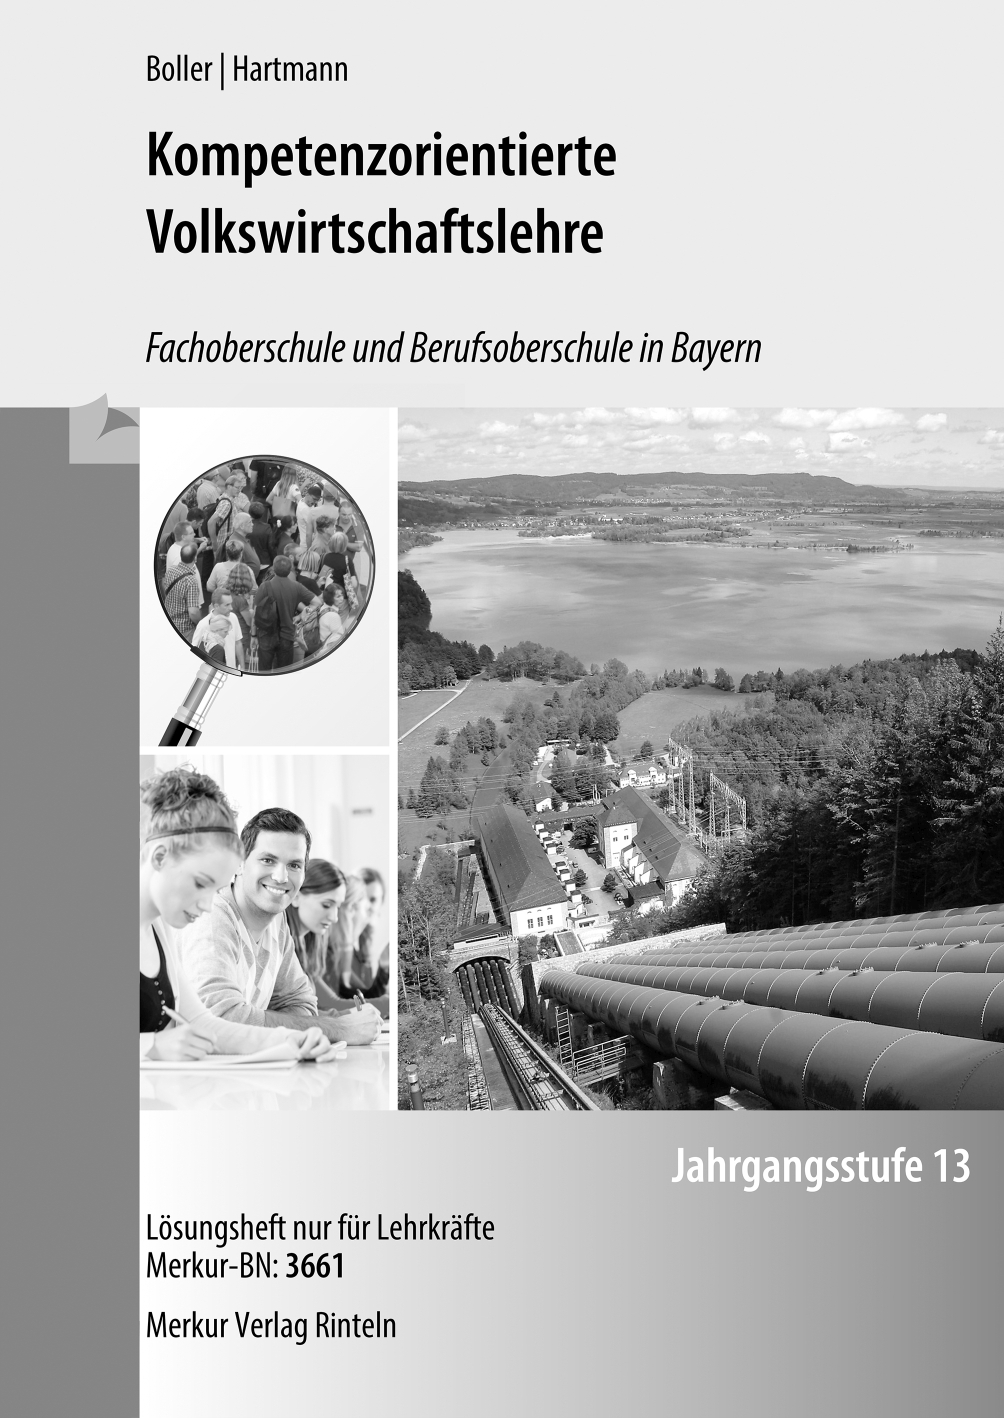 Kompetenzorientierte Volkswirtschaftslehre Fachoberschule und Berufsoberschule in Bayern Jahrgangsstufe 13 - Lösungen